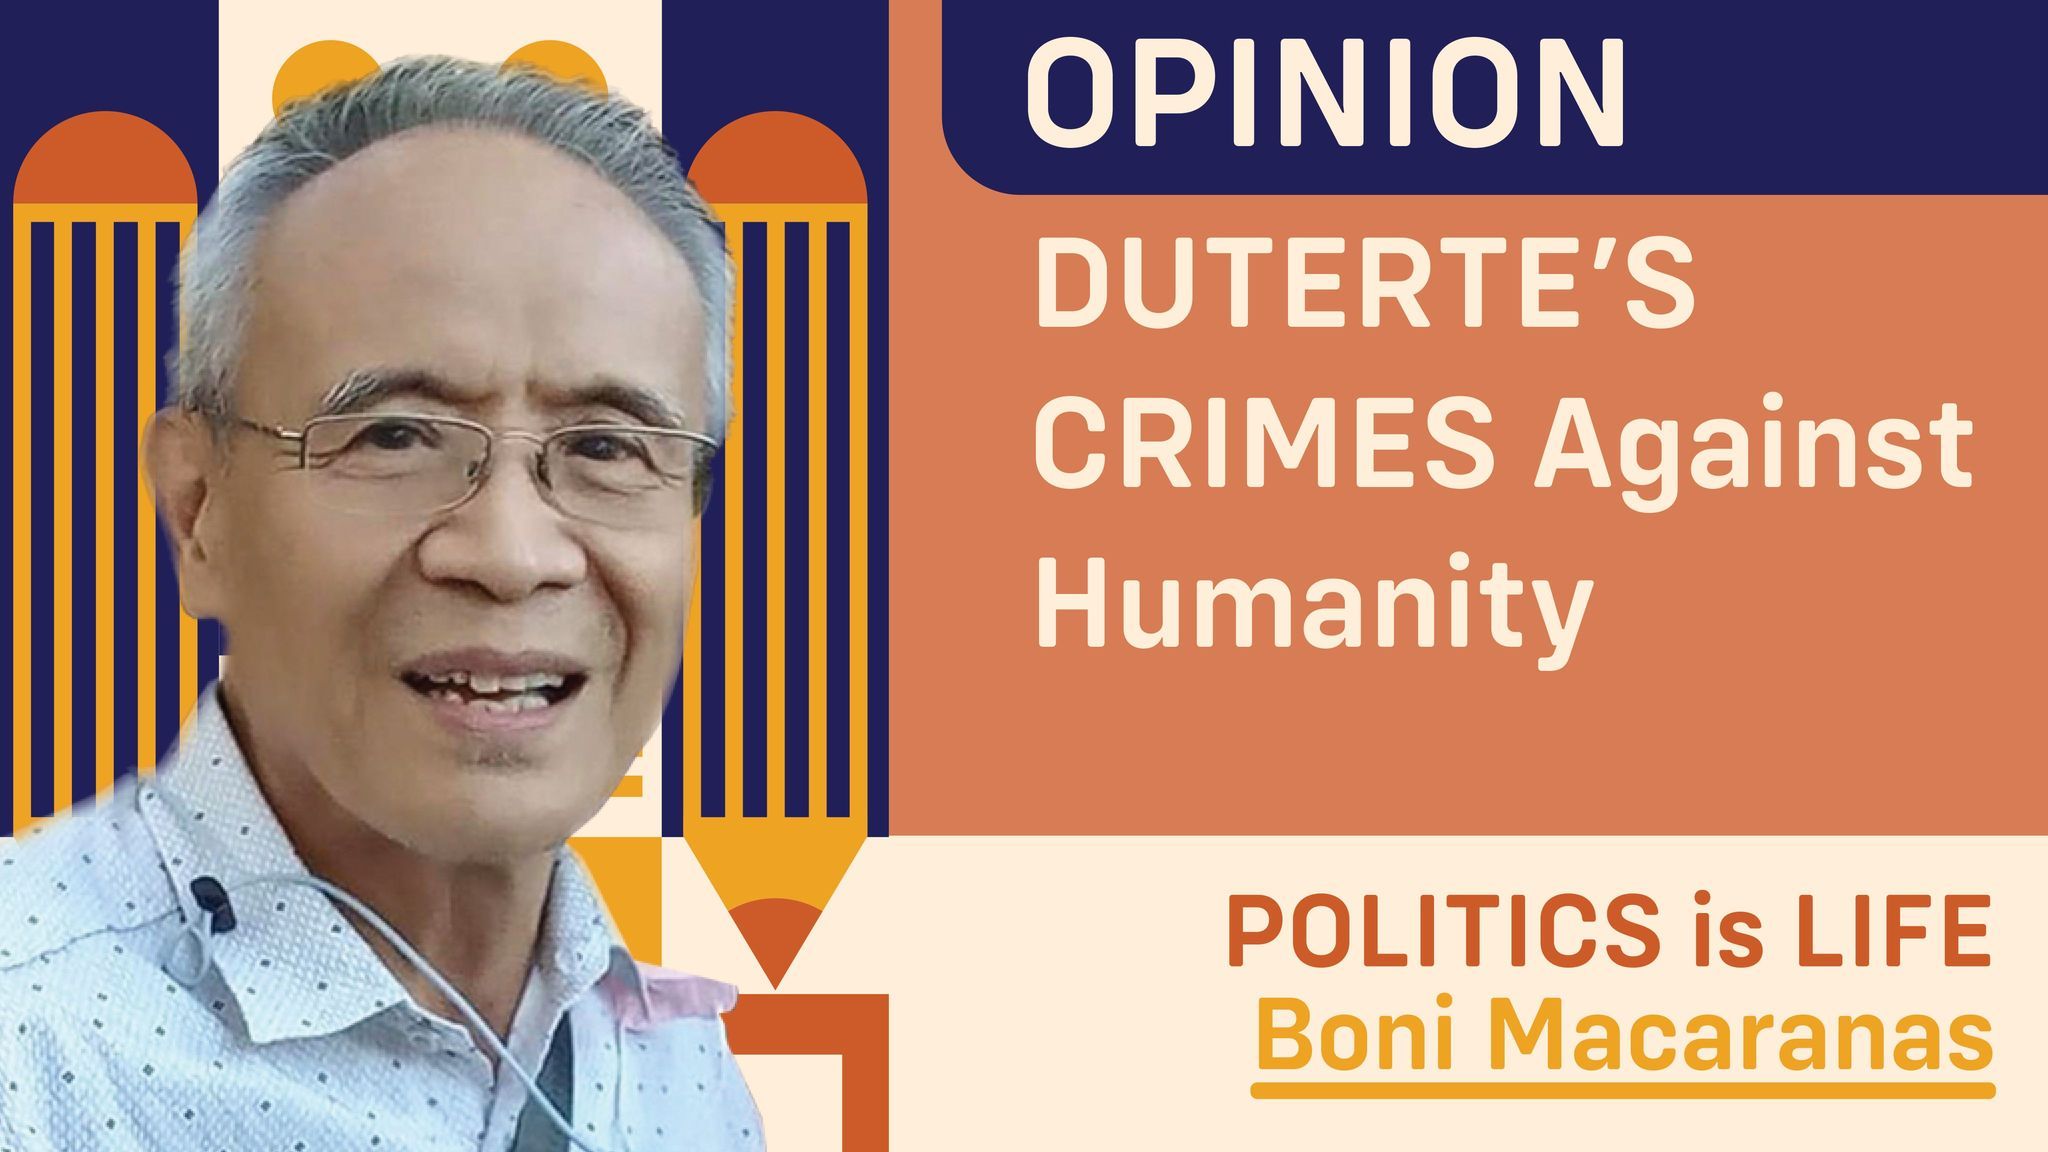 Duterte's crimes against humanity